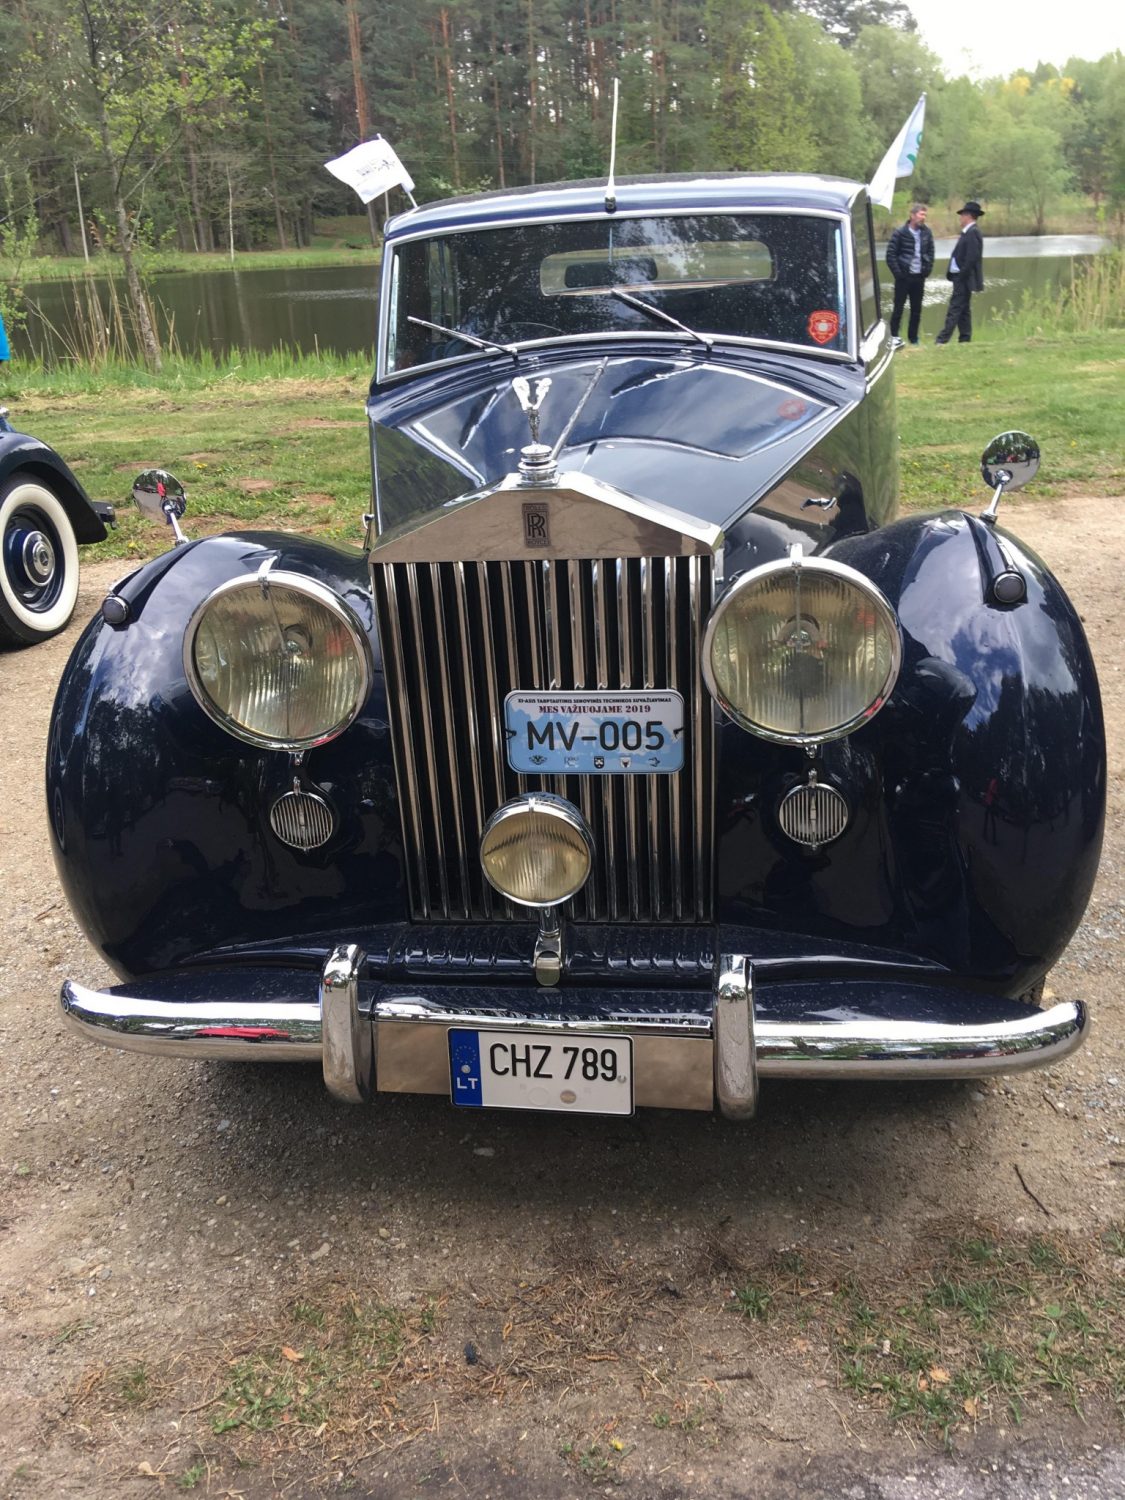 Grand Prix (Didįjį Prizą) laimėjo Alfredas Zigmantas ir jo 1947 m. automobilis Rolls Royce Silver Wraith.